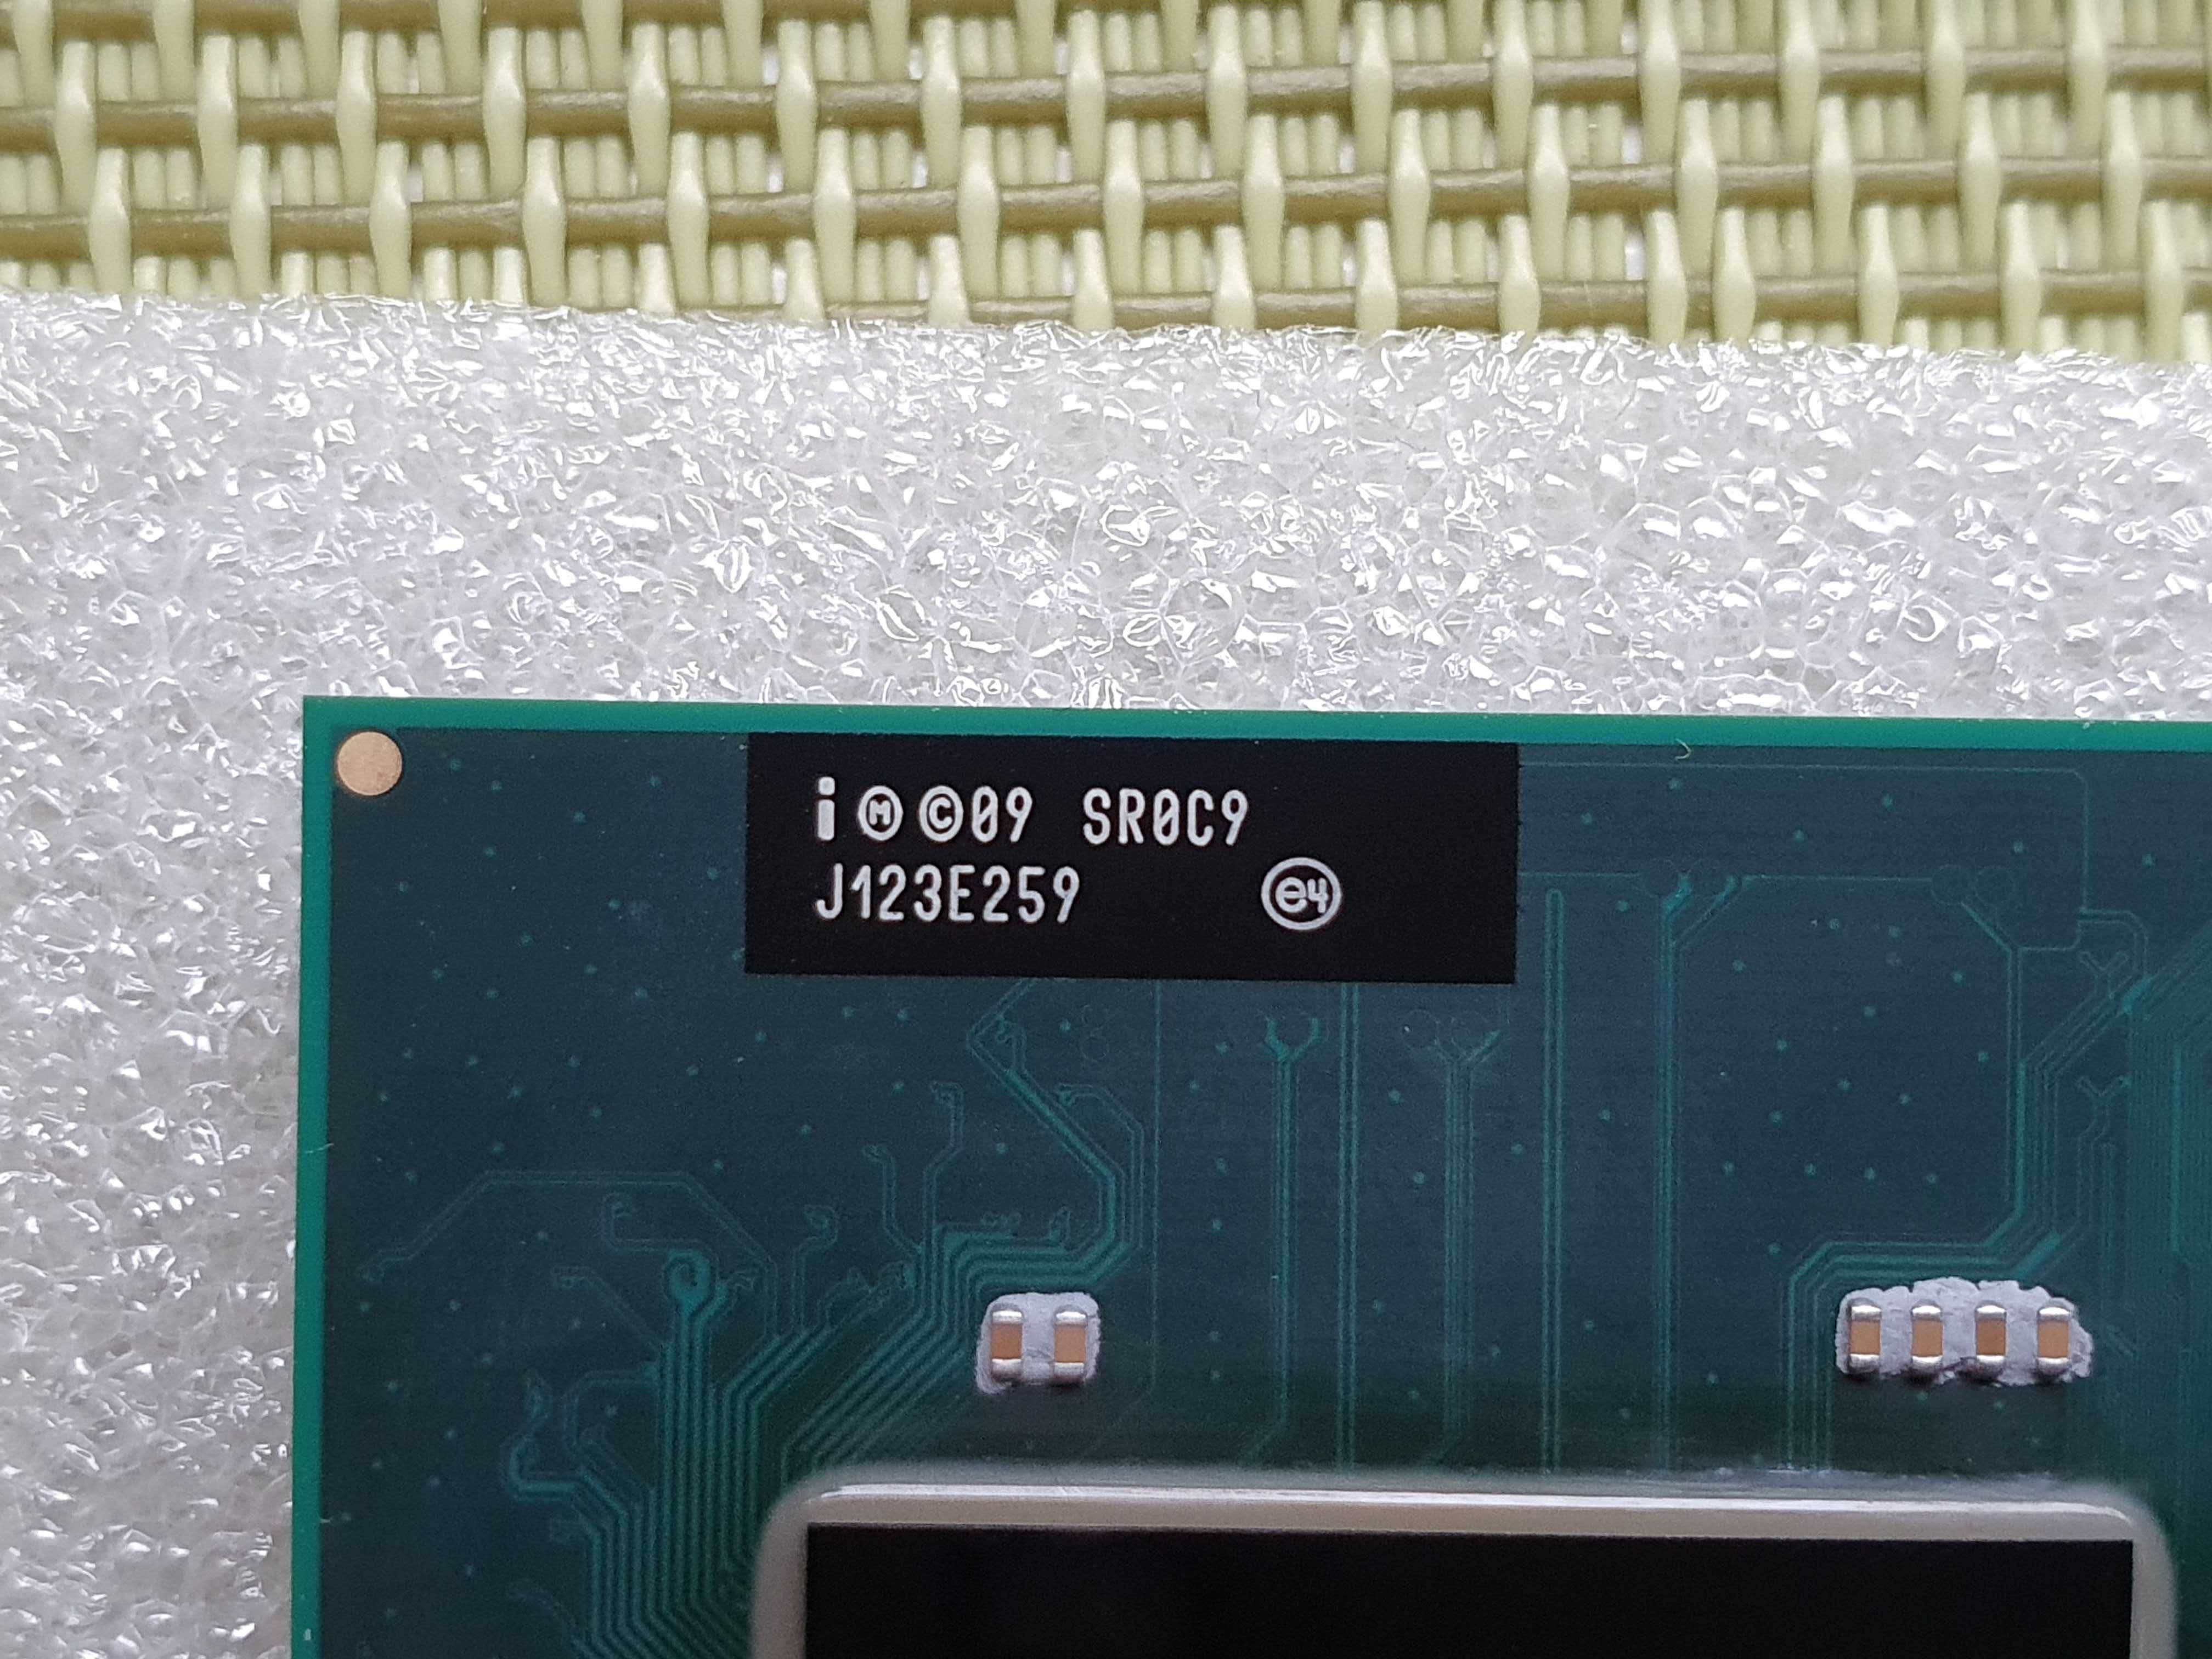 Procesor Intel Pentium B960 SR0C9